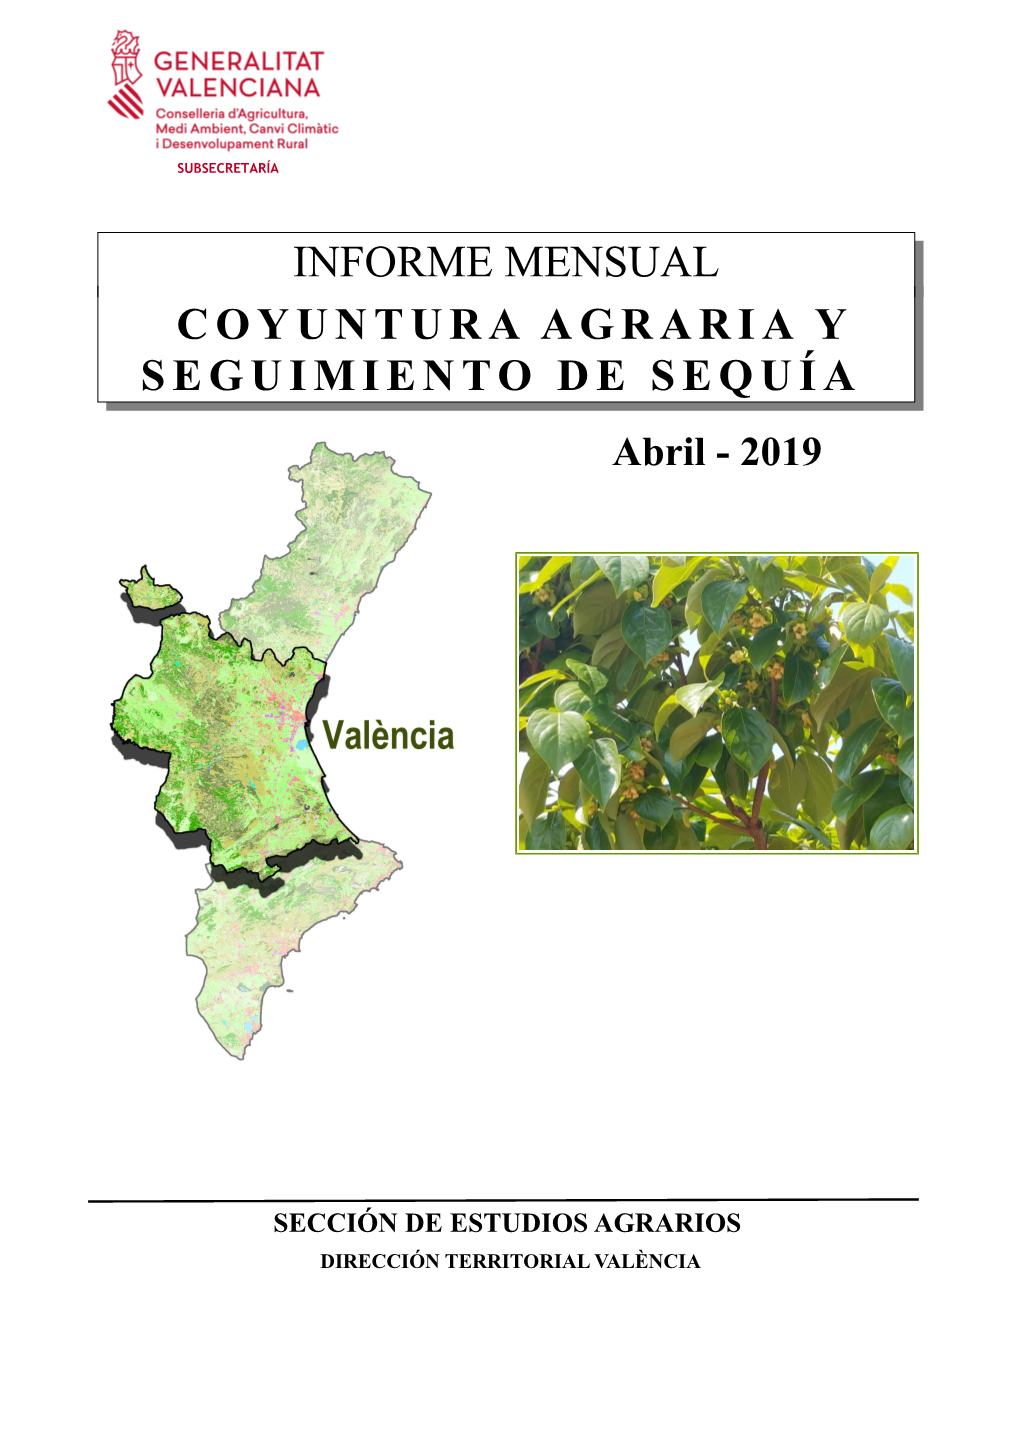 INFORME MENSUAL COYUNTURA AGRARIA Y SEGUIMIENTO DE SEQUÍA Abril - 2019